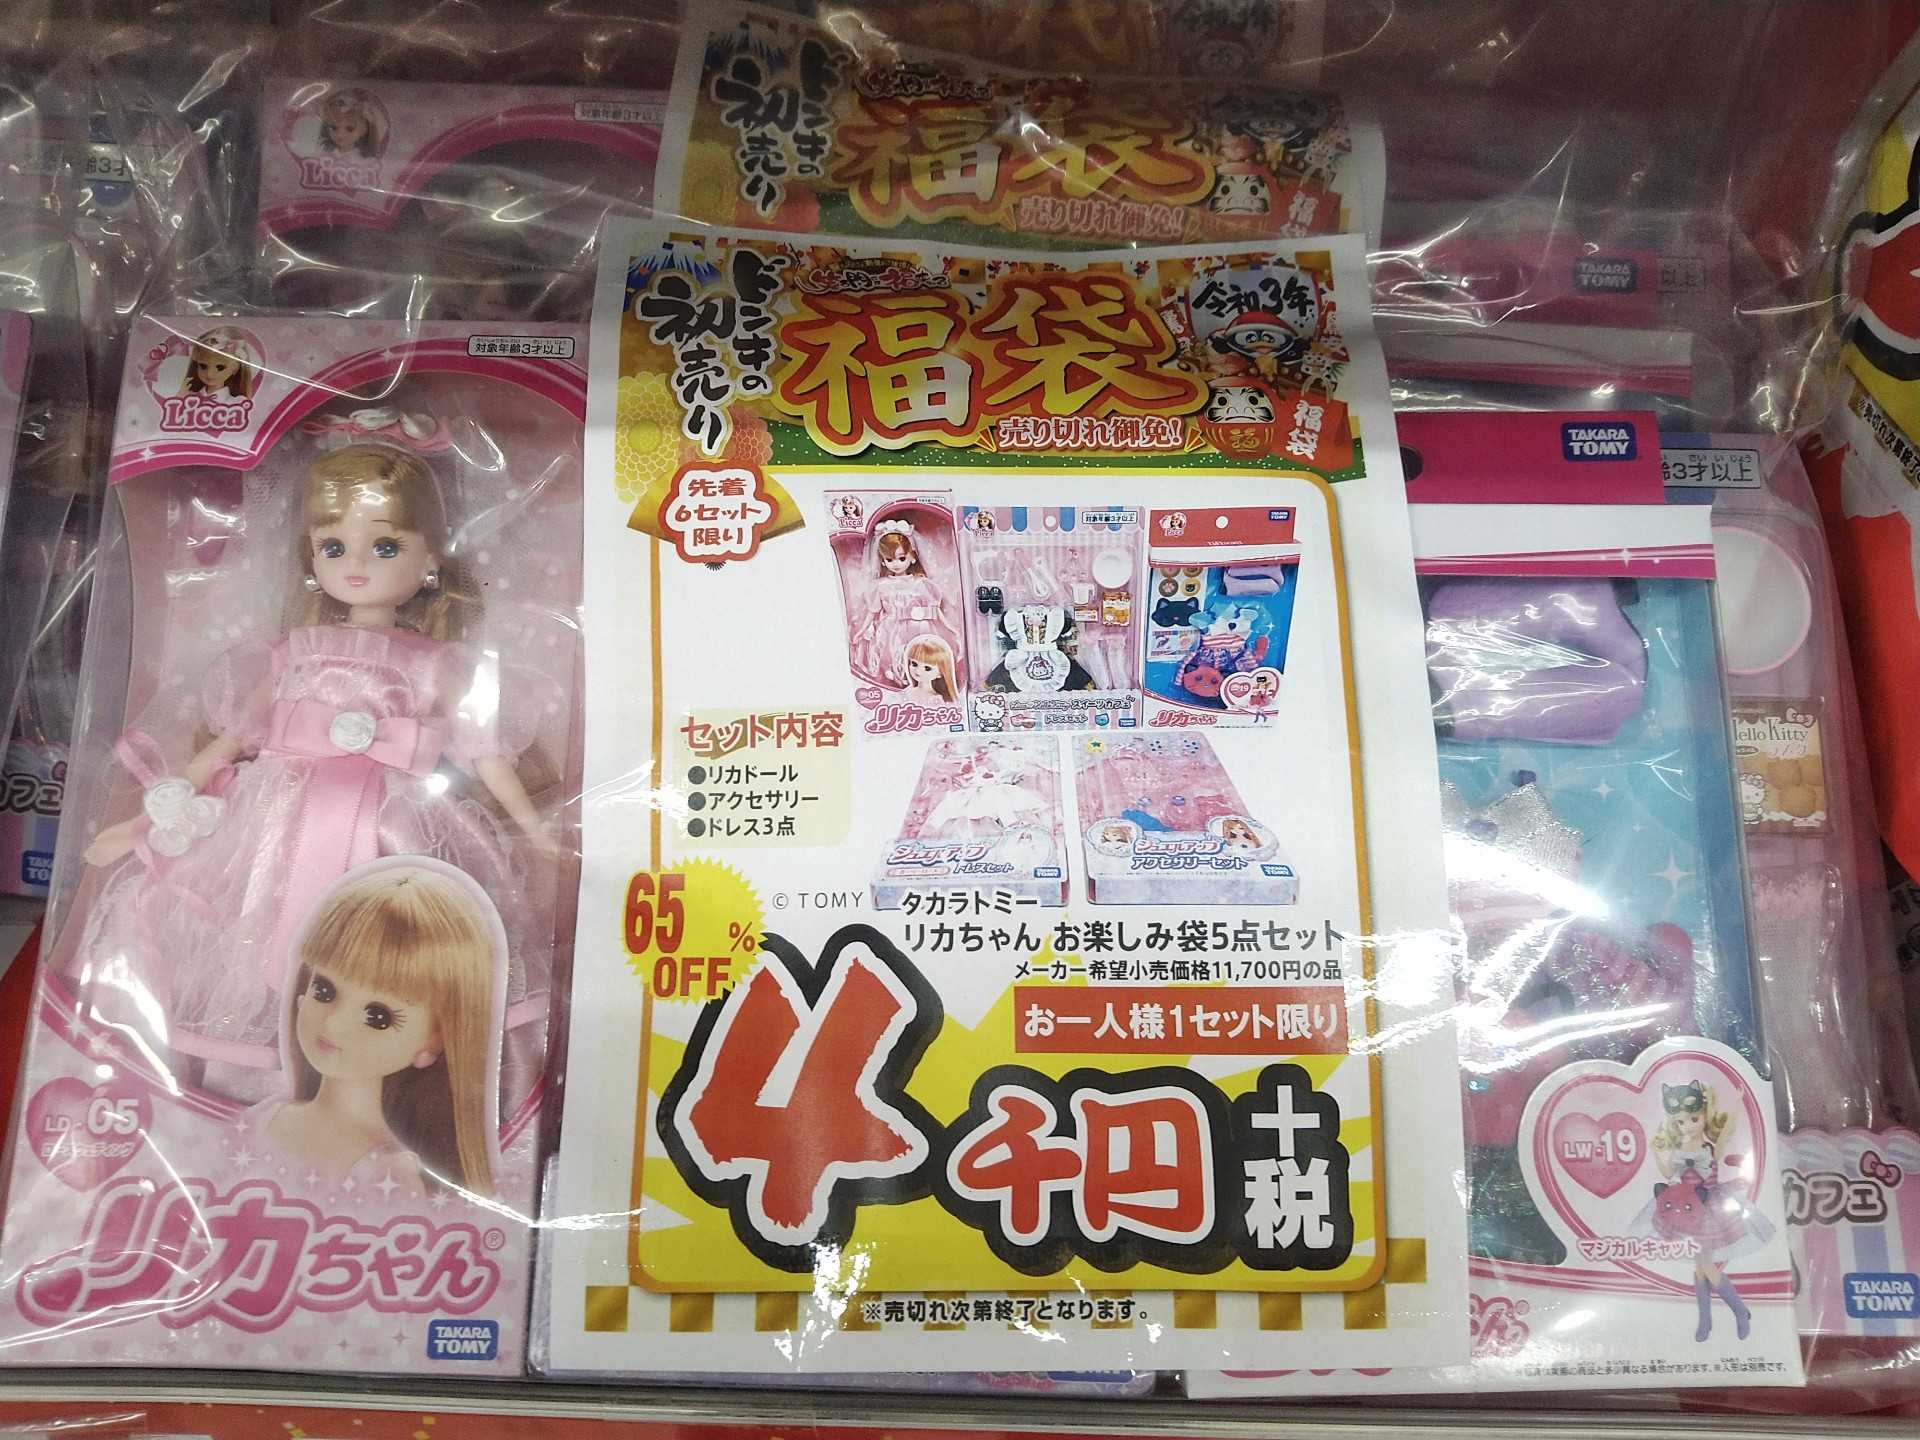 ドンキの玩具福袋 リカちゃん 仮面ライダー等 ダラママの買い物ブログ 楽天ブログ